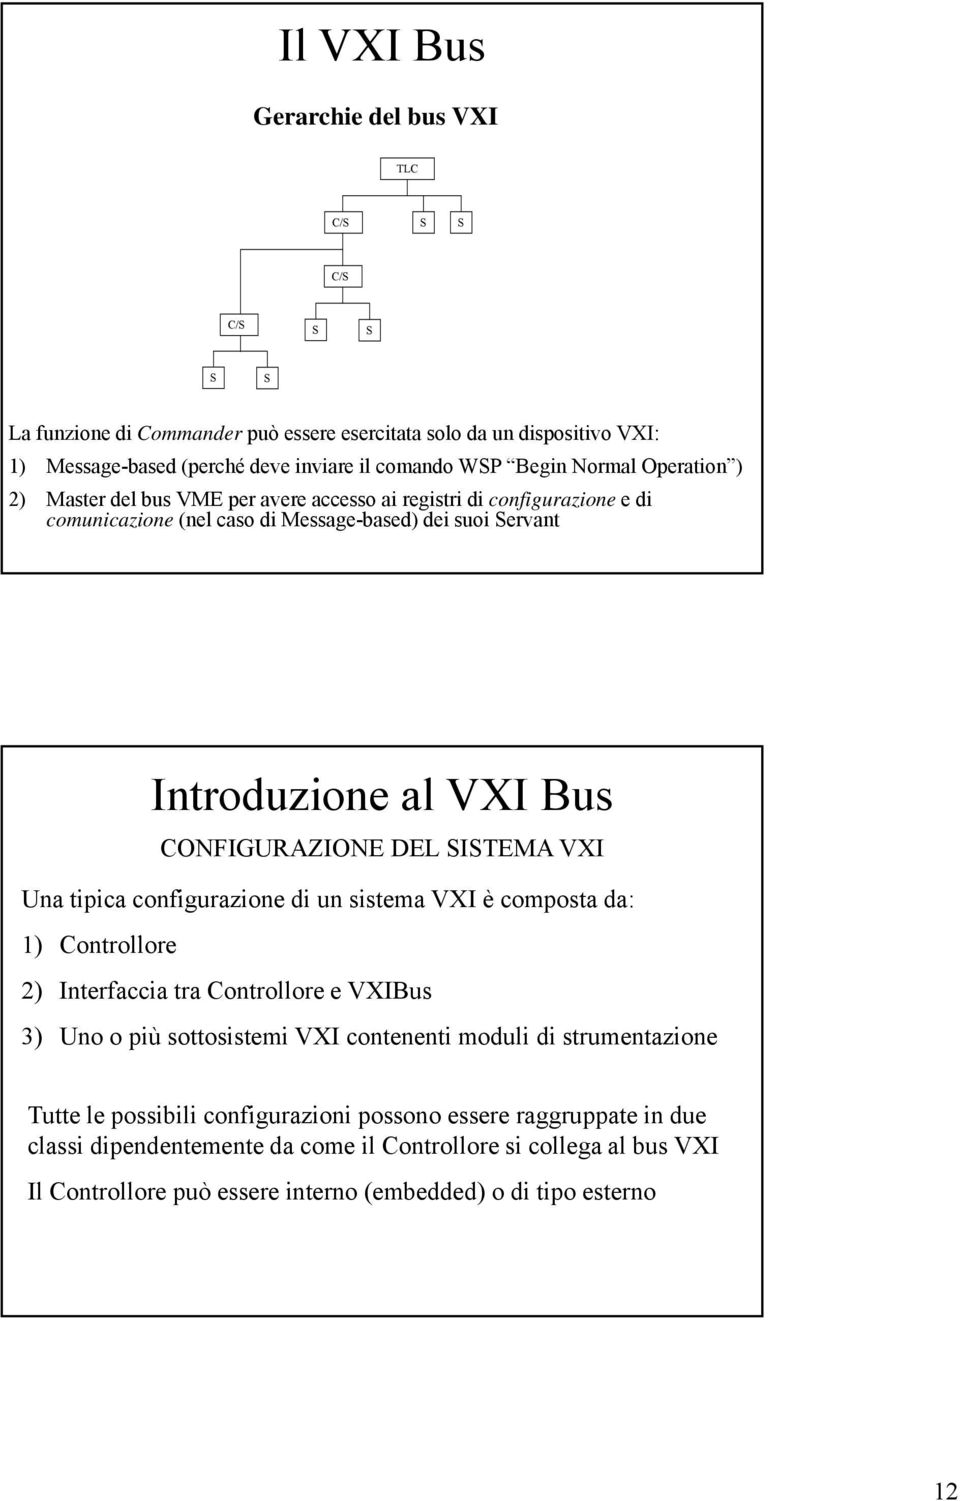 Una tipica configurazione di un sistema VXI è composta da: 1) Controllore 2) Interfaccia tra Controllore e VXIBus 3) Uno o più sottosistemi VXI contenenti moduli di strumentazione Tutte le